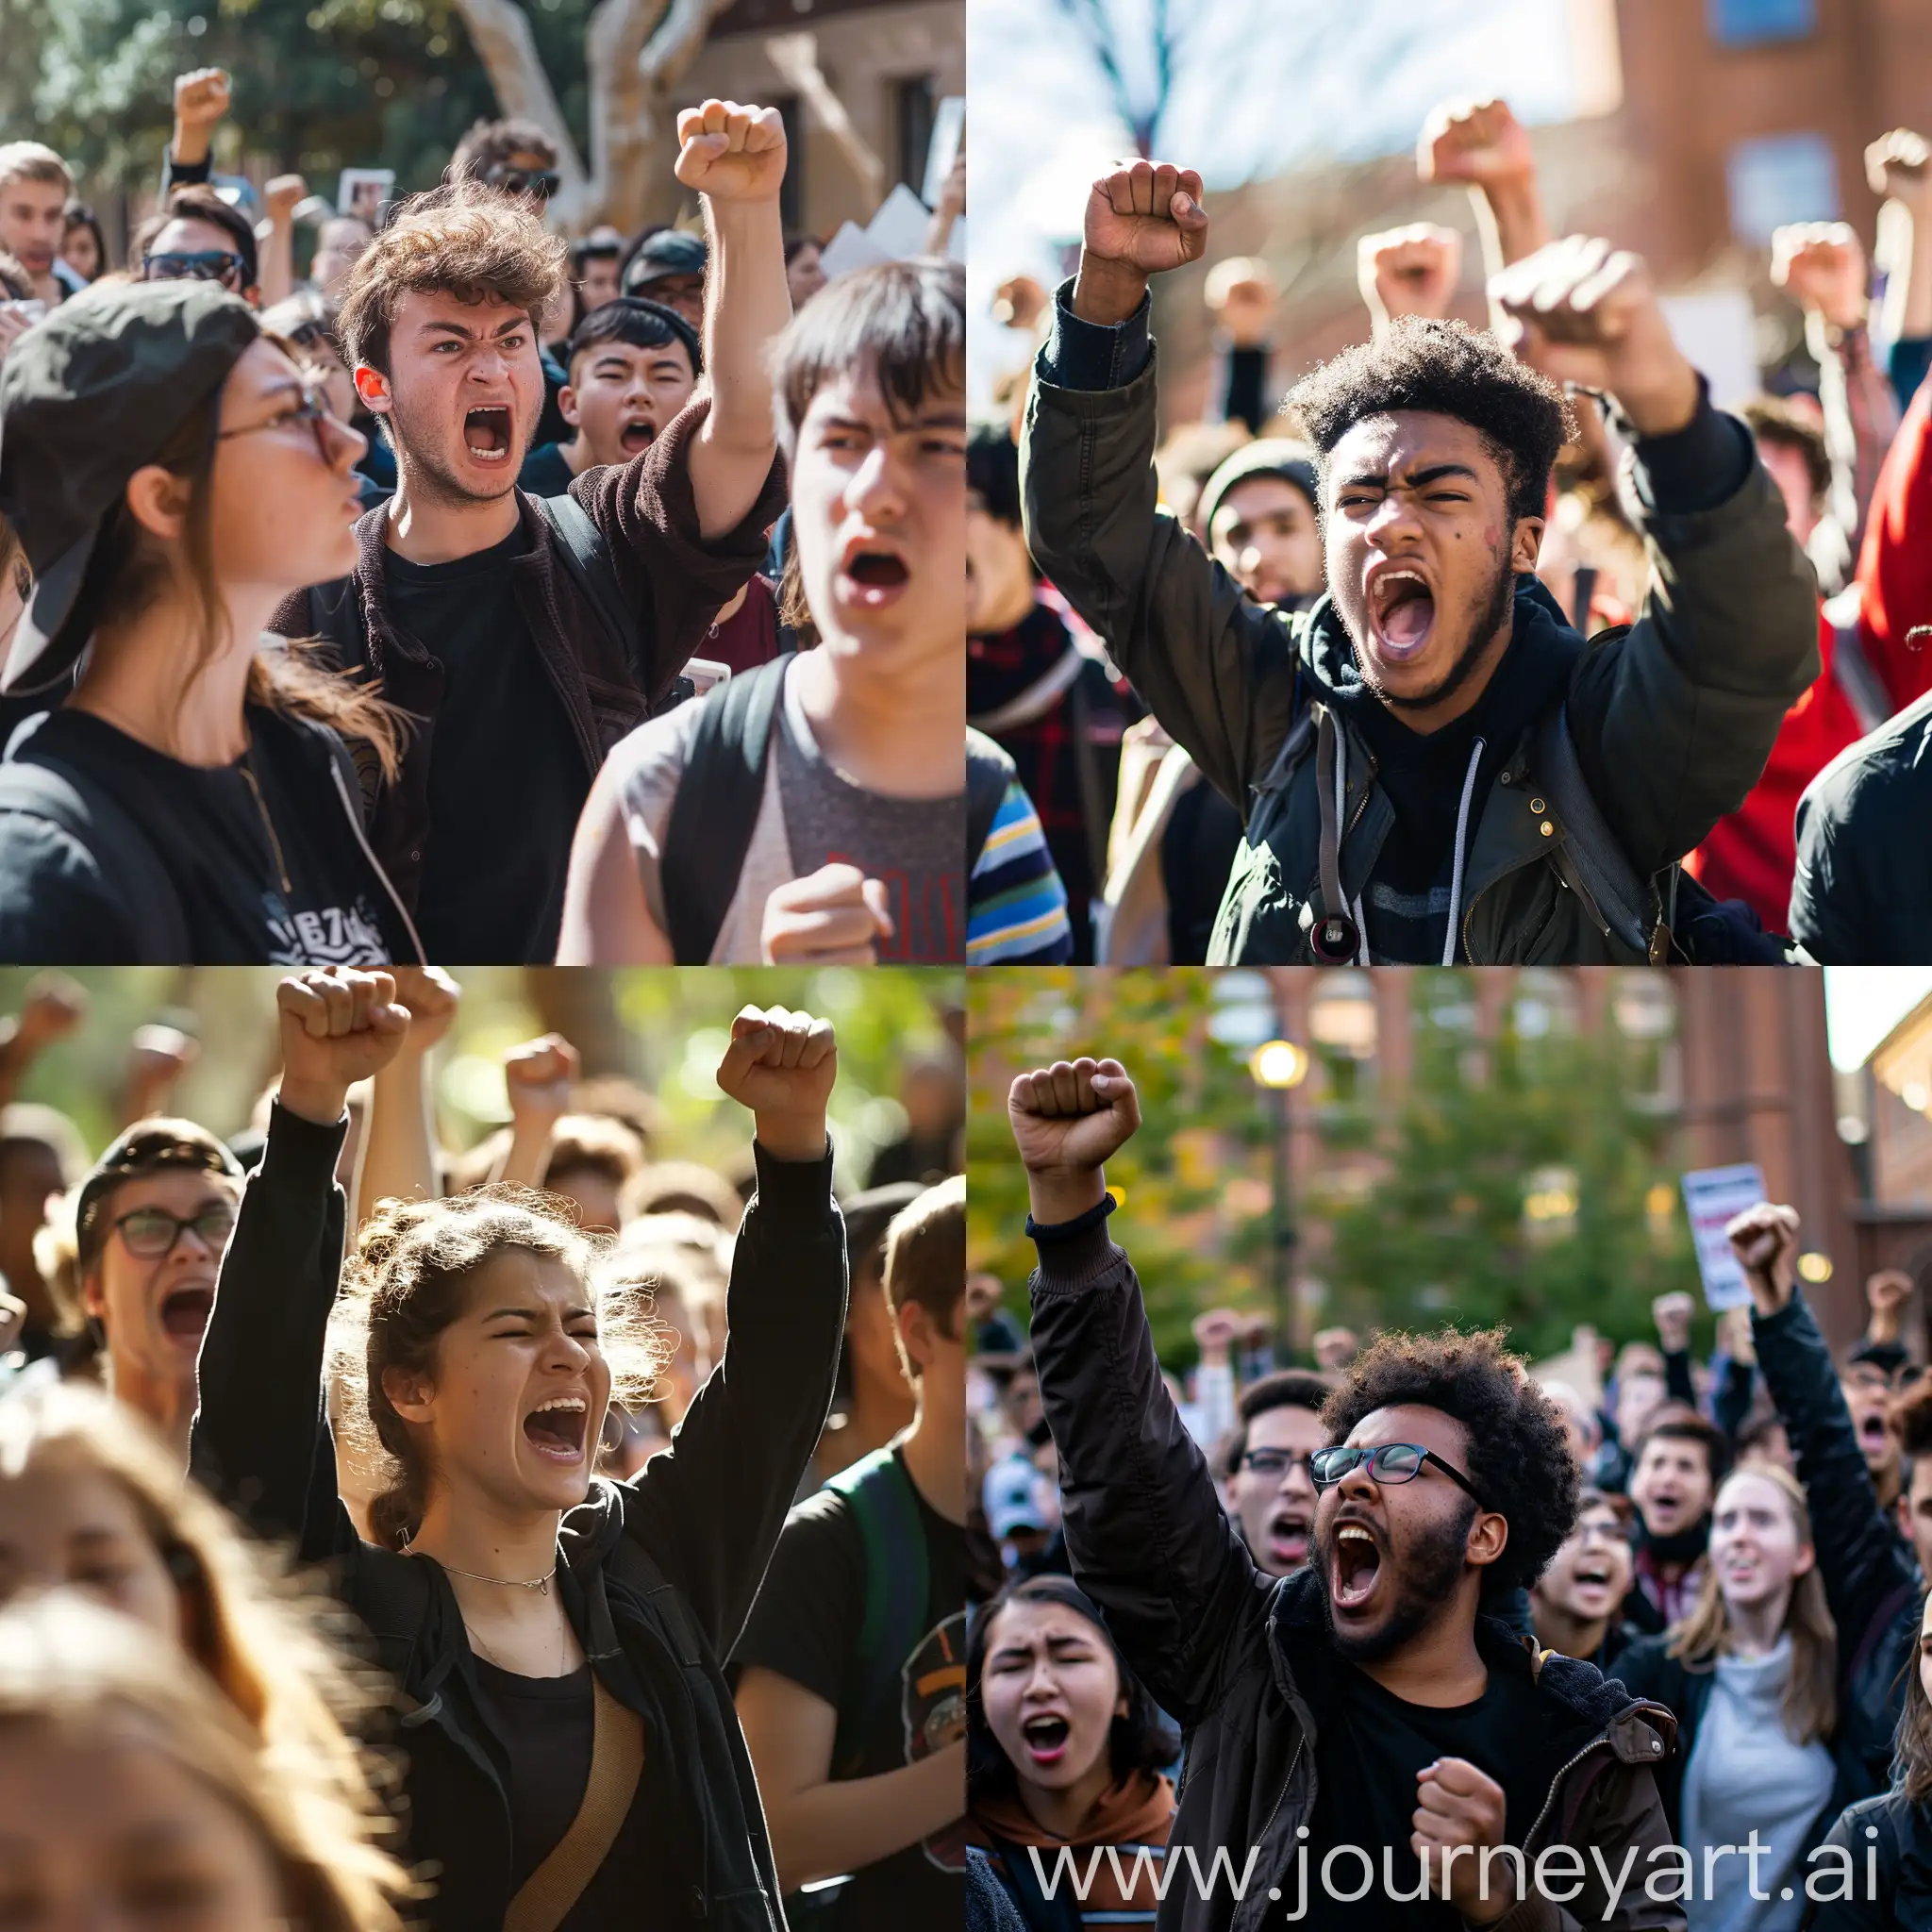 طلاب جامعيون يتظاهرون غضباً من إدارة جامعتهم